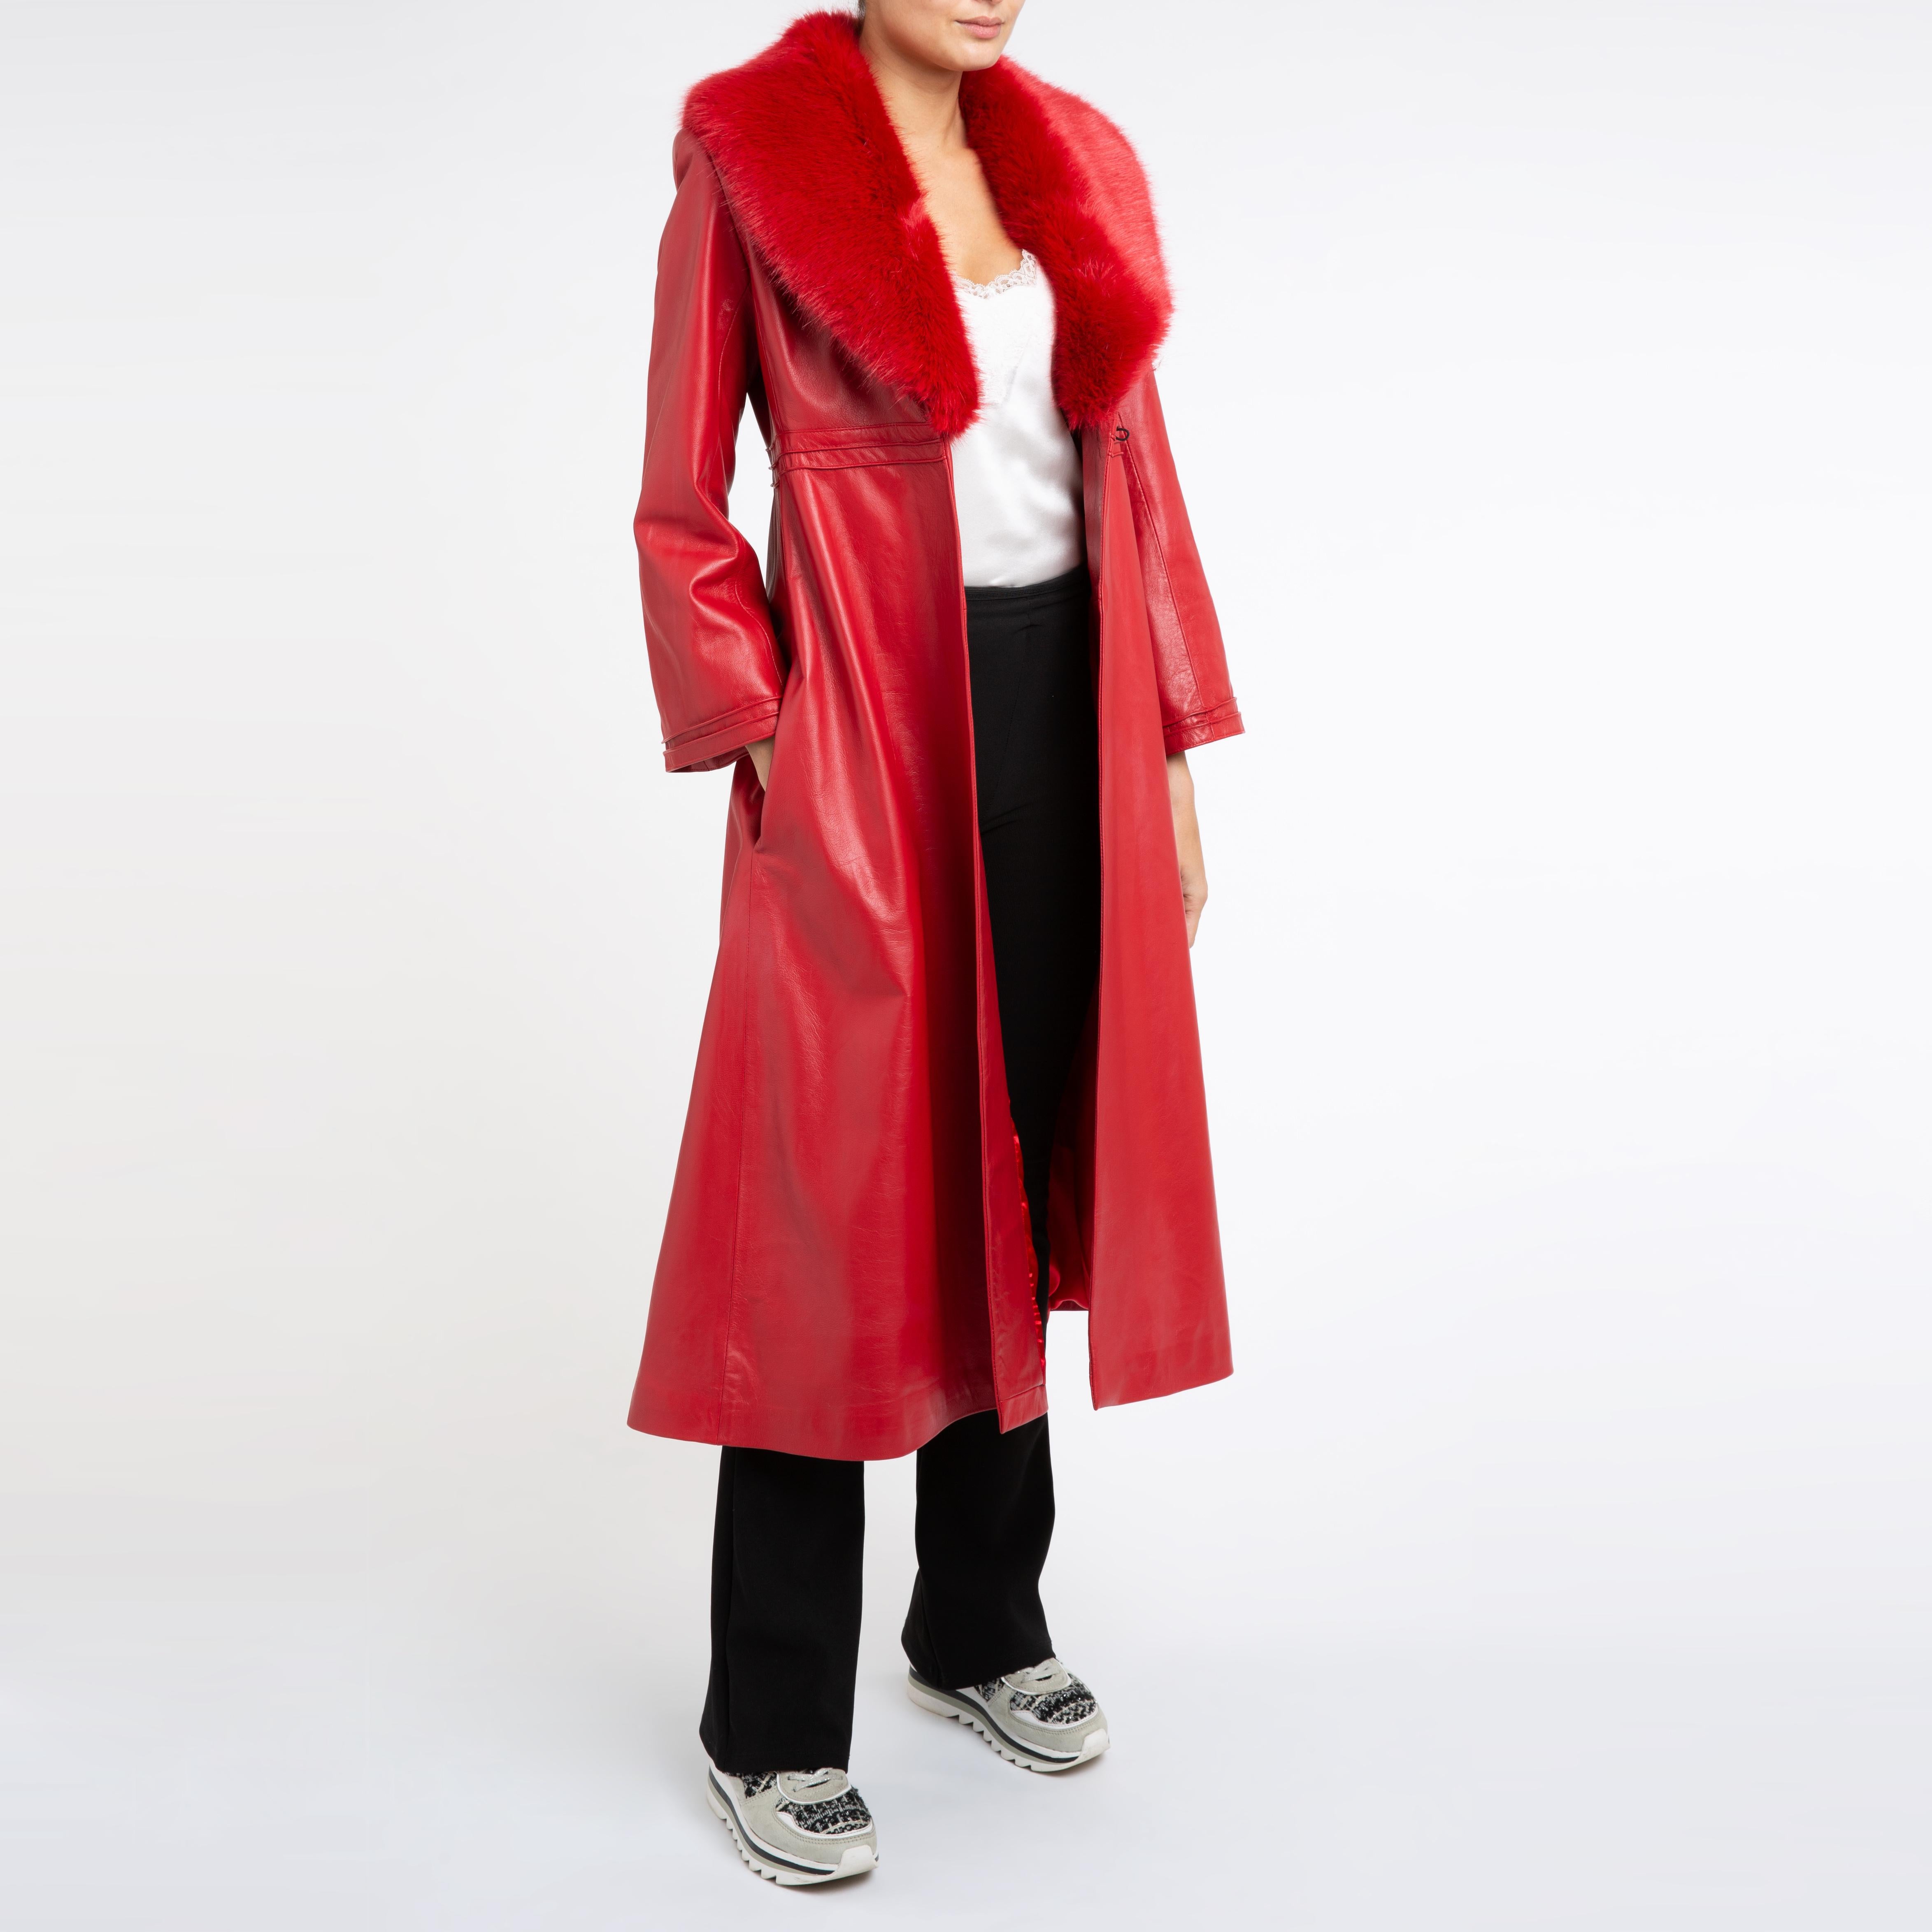 Verheyen London Edward Ledermantel mit Kunstfellkragen in Rot - Größe UK 10

Der Edward Ledermantel von Verheyen London ist ein romantisches Design, inspiriert von den 1970er Jahren und der Edwardianischen Ära der Mode.  Ein zeitloses Design, das